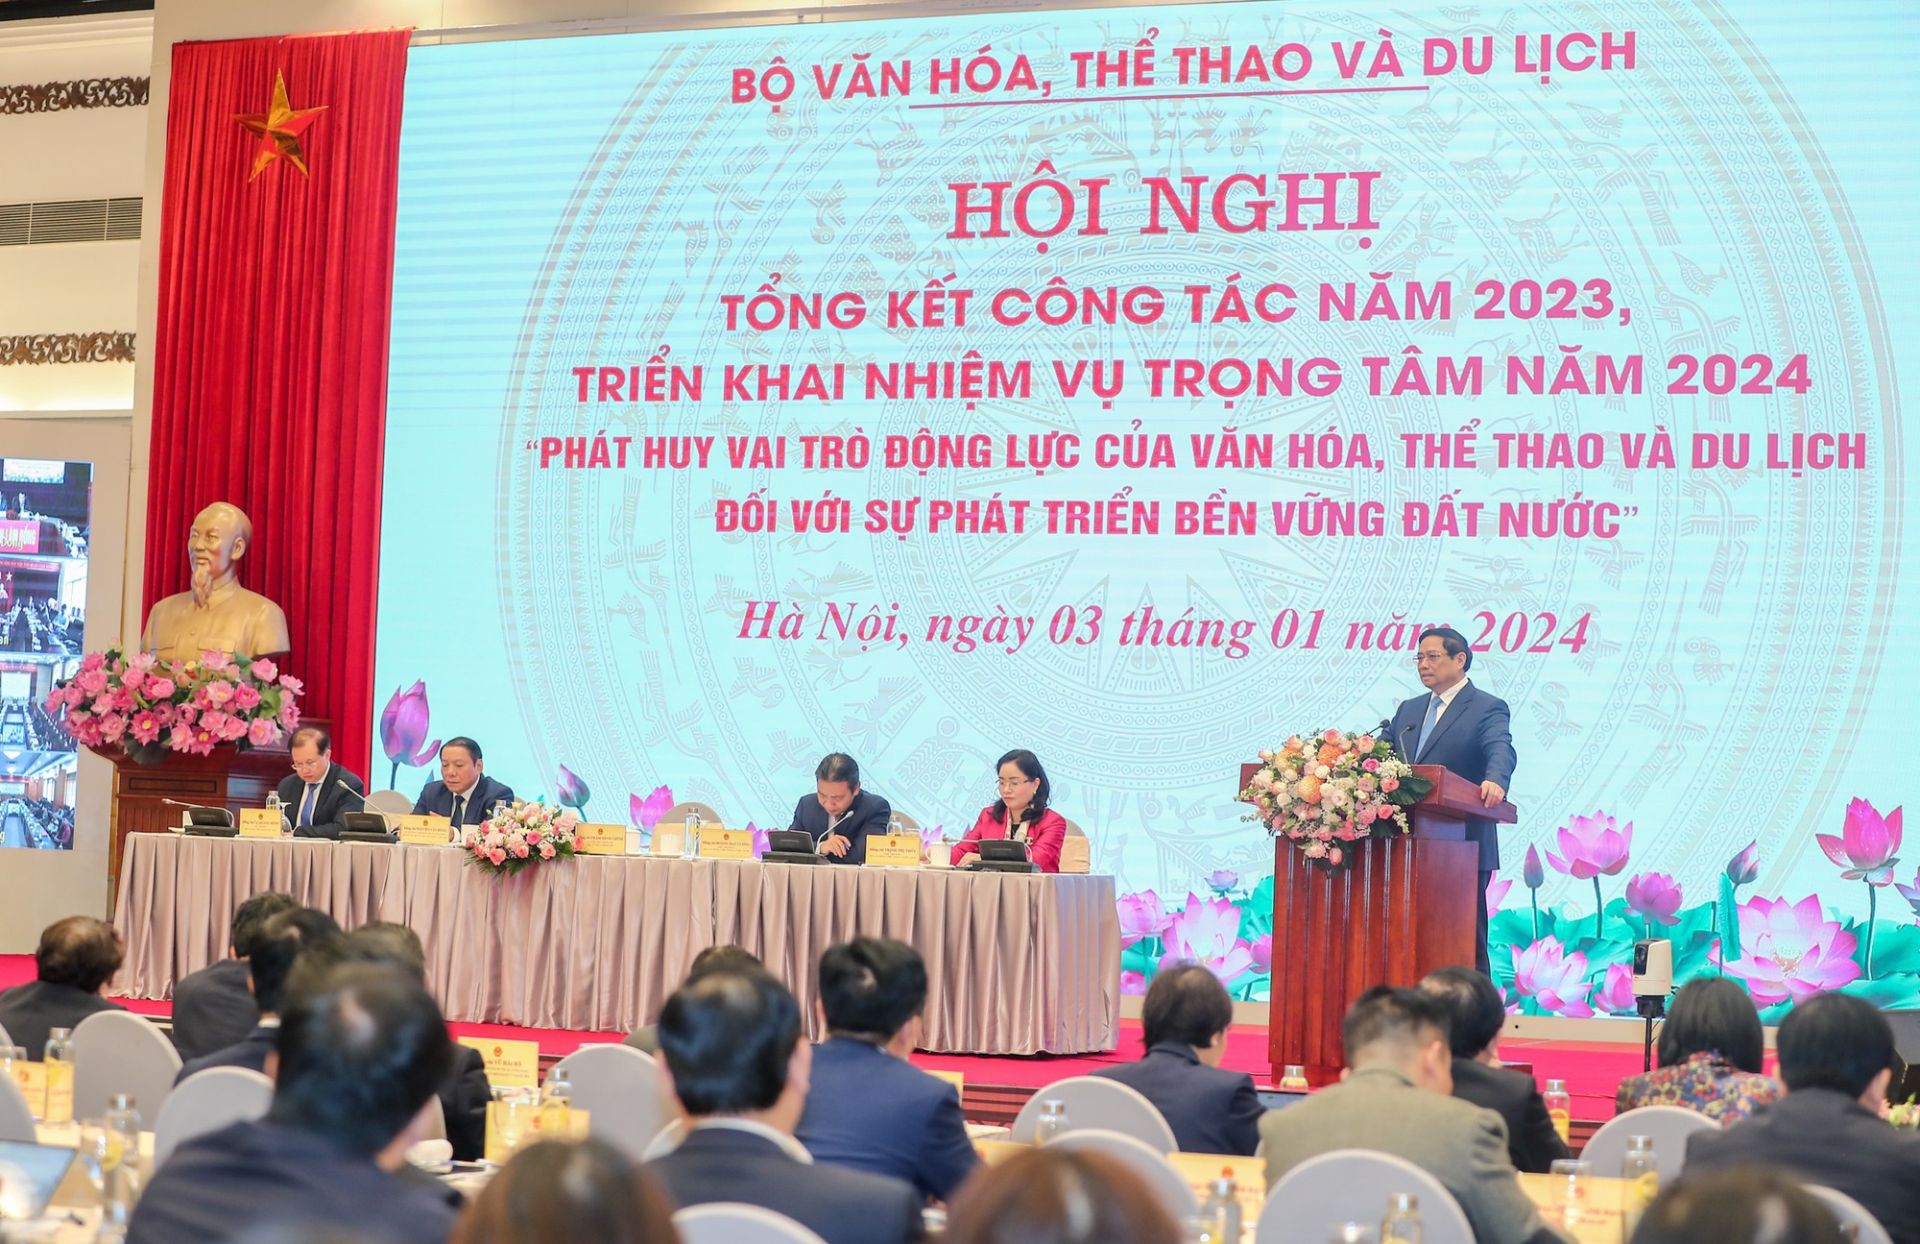 Thủ tướng Phạm Minh Chính tham dự Hội nghị tổng kết công tác năm 2023 và triển khai nhiệm vụ năm 2024 của ngành Văn hóa, Thể thao và Du lịch